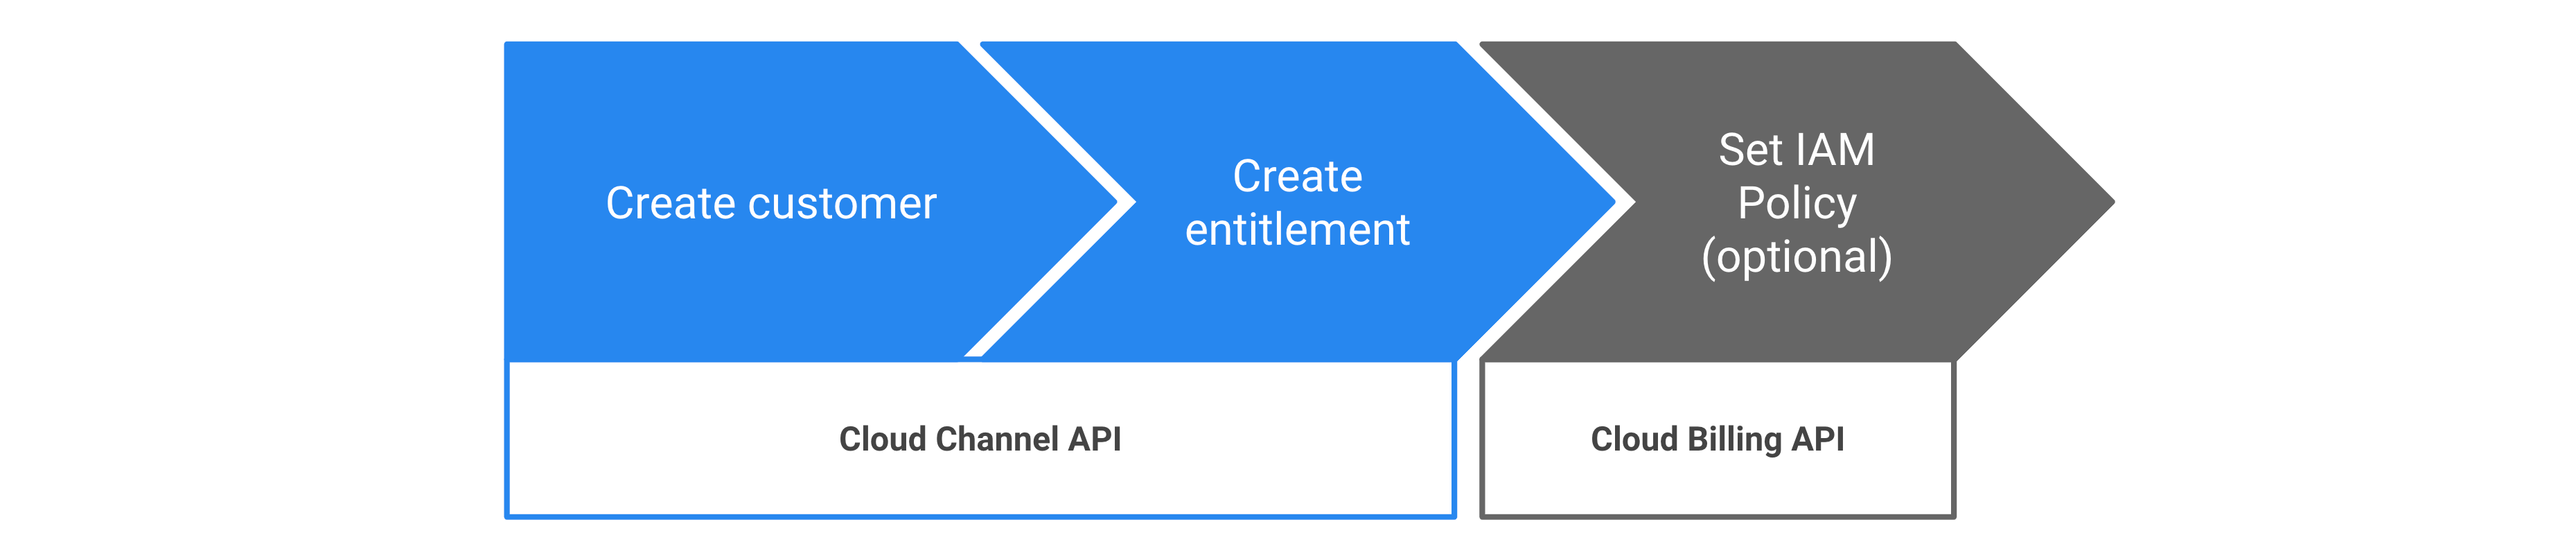 Passaggi per eseguire il provisioning dei diritti Google Cloud tramite l'API Cloud Channel